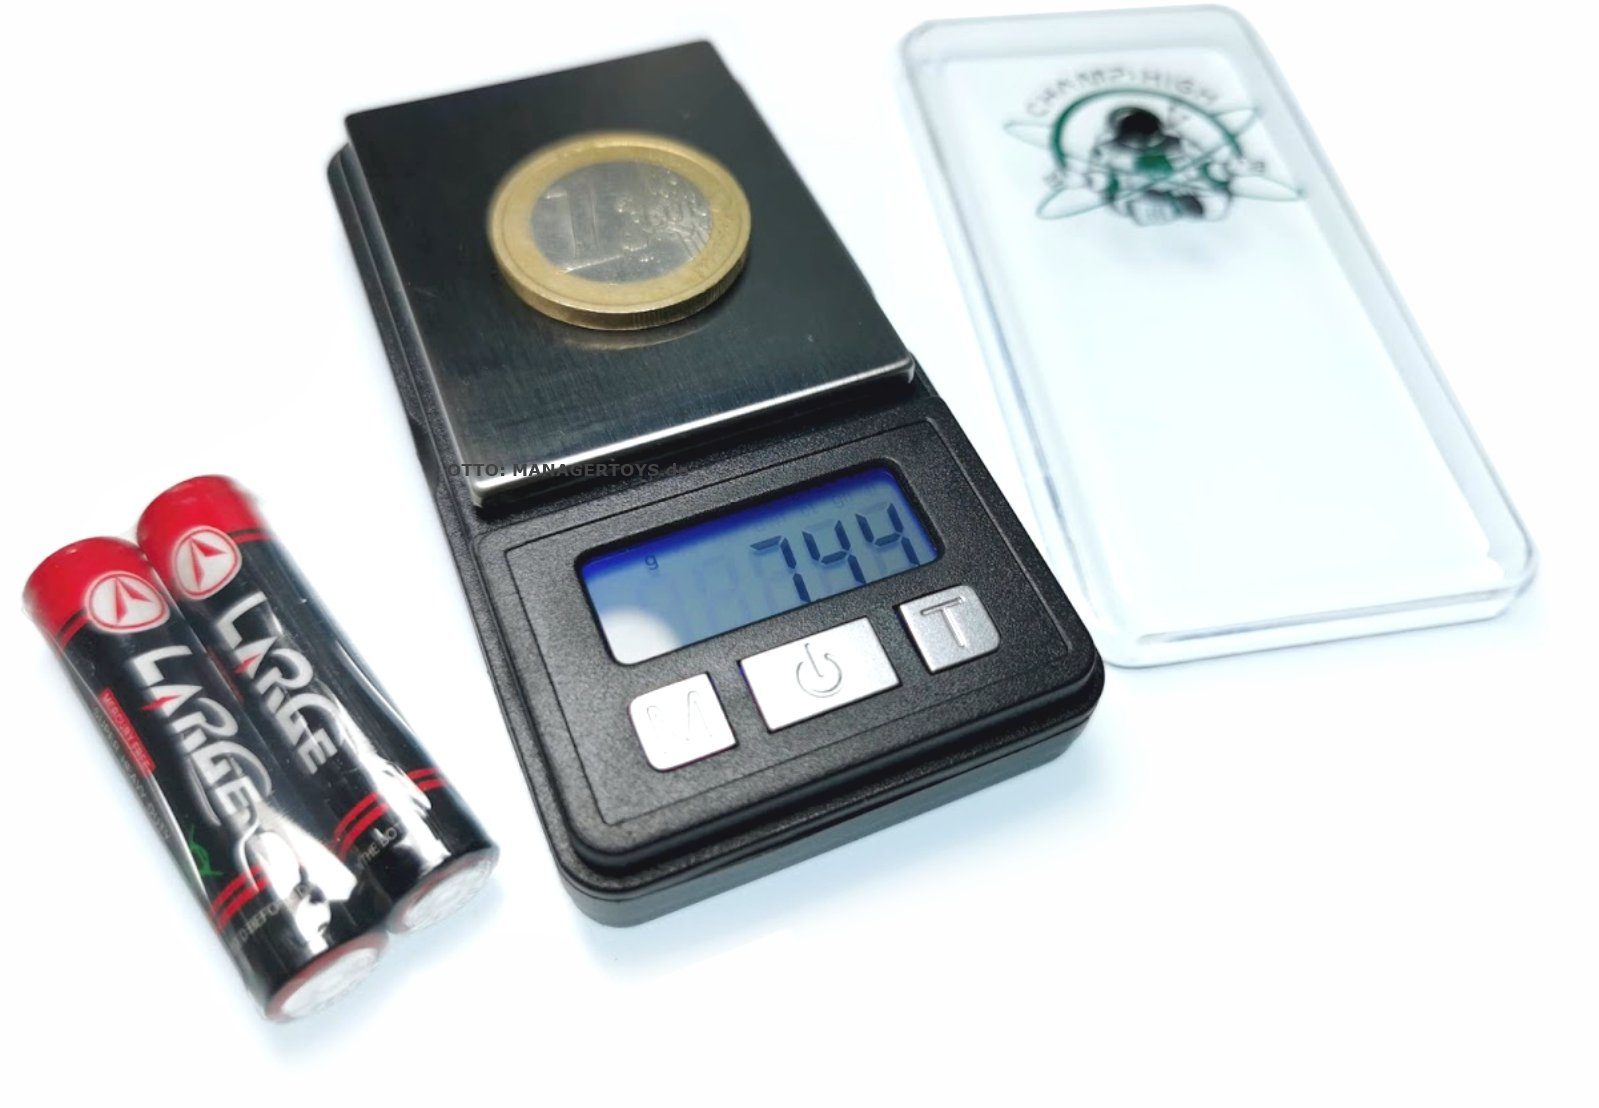 Taschen Pocket DIAMOND 200g Feinwaage / Feinwaage MINI 0,01g CHAMP Waage Miniatur HIGH